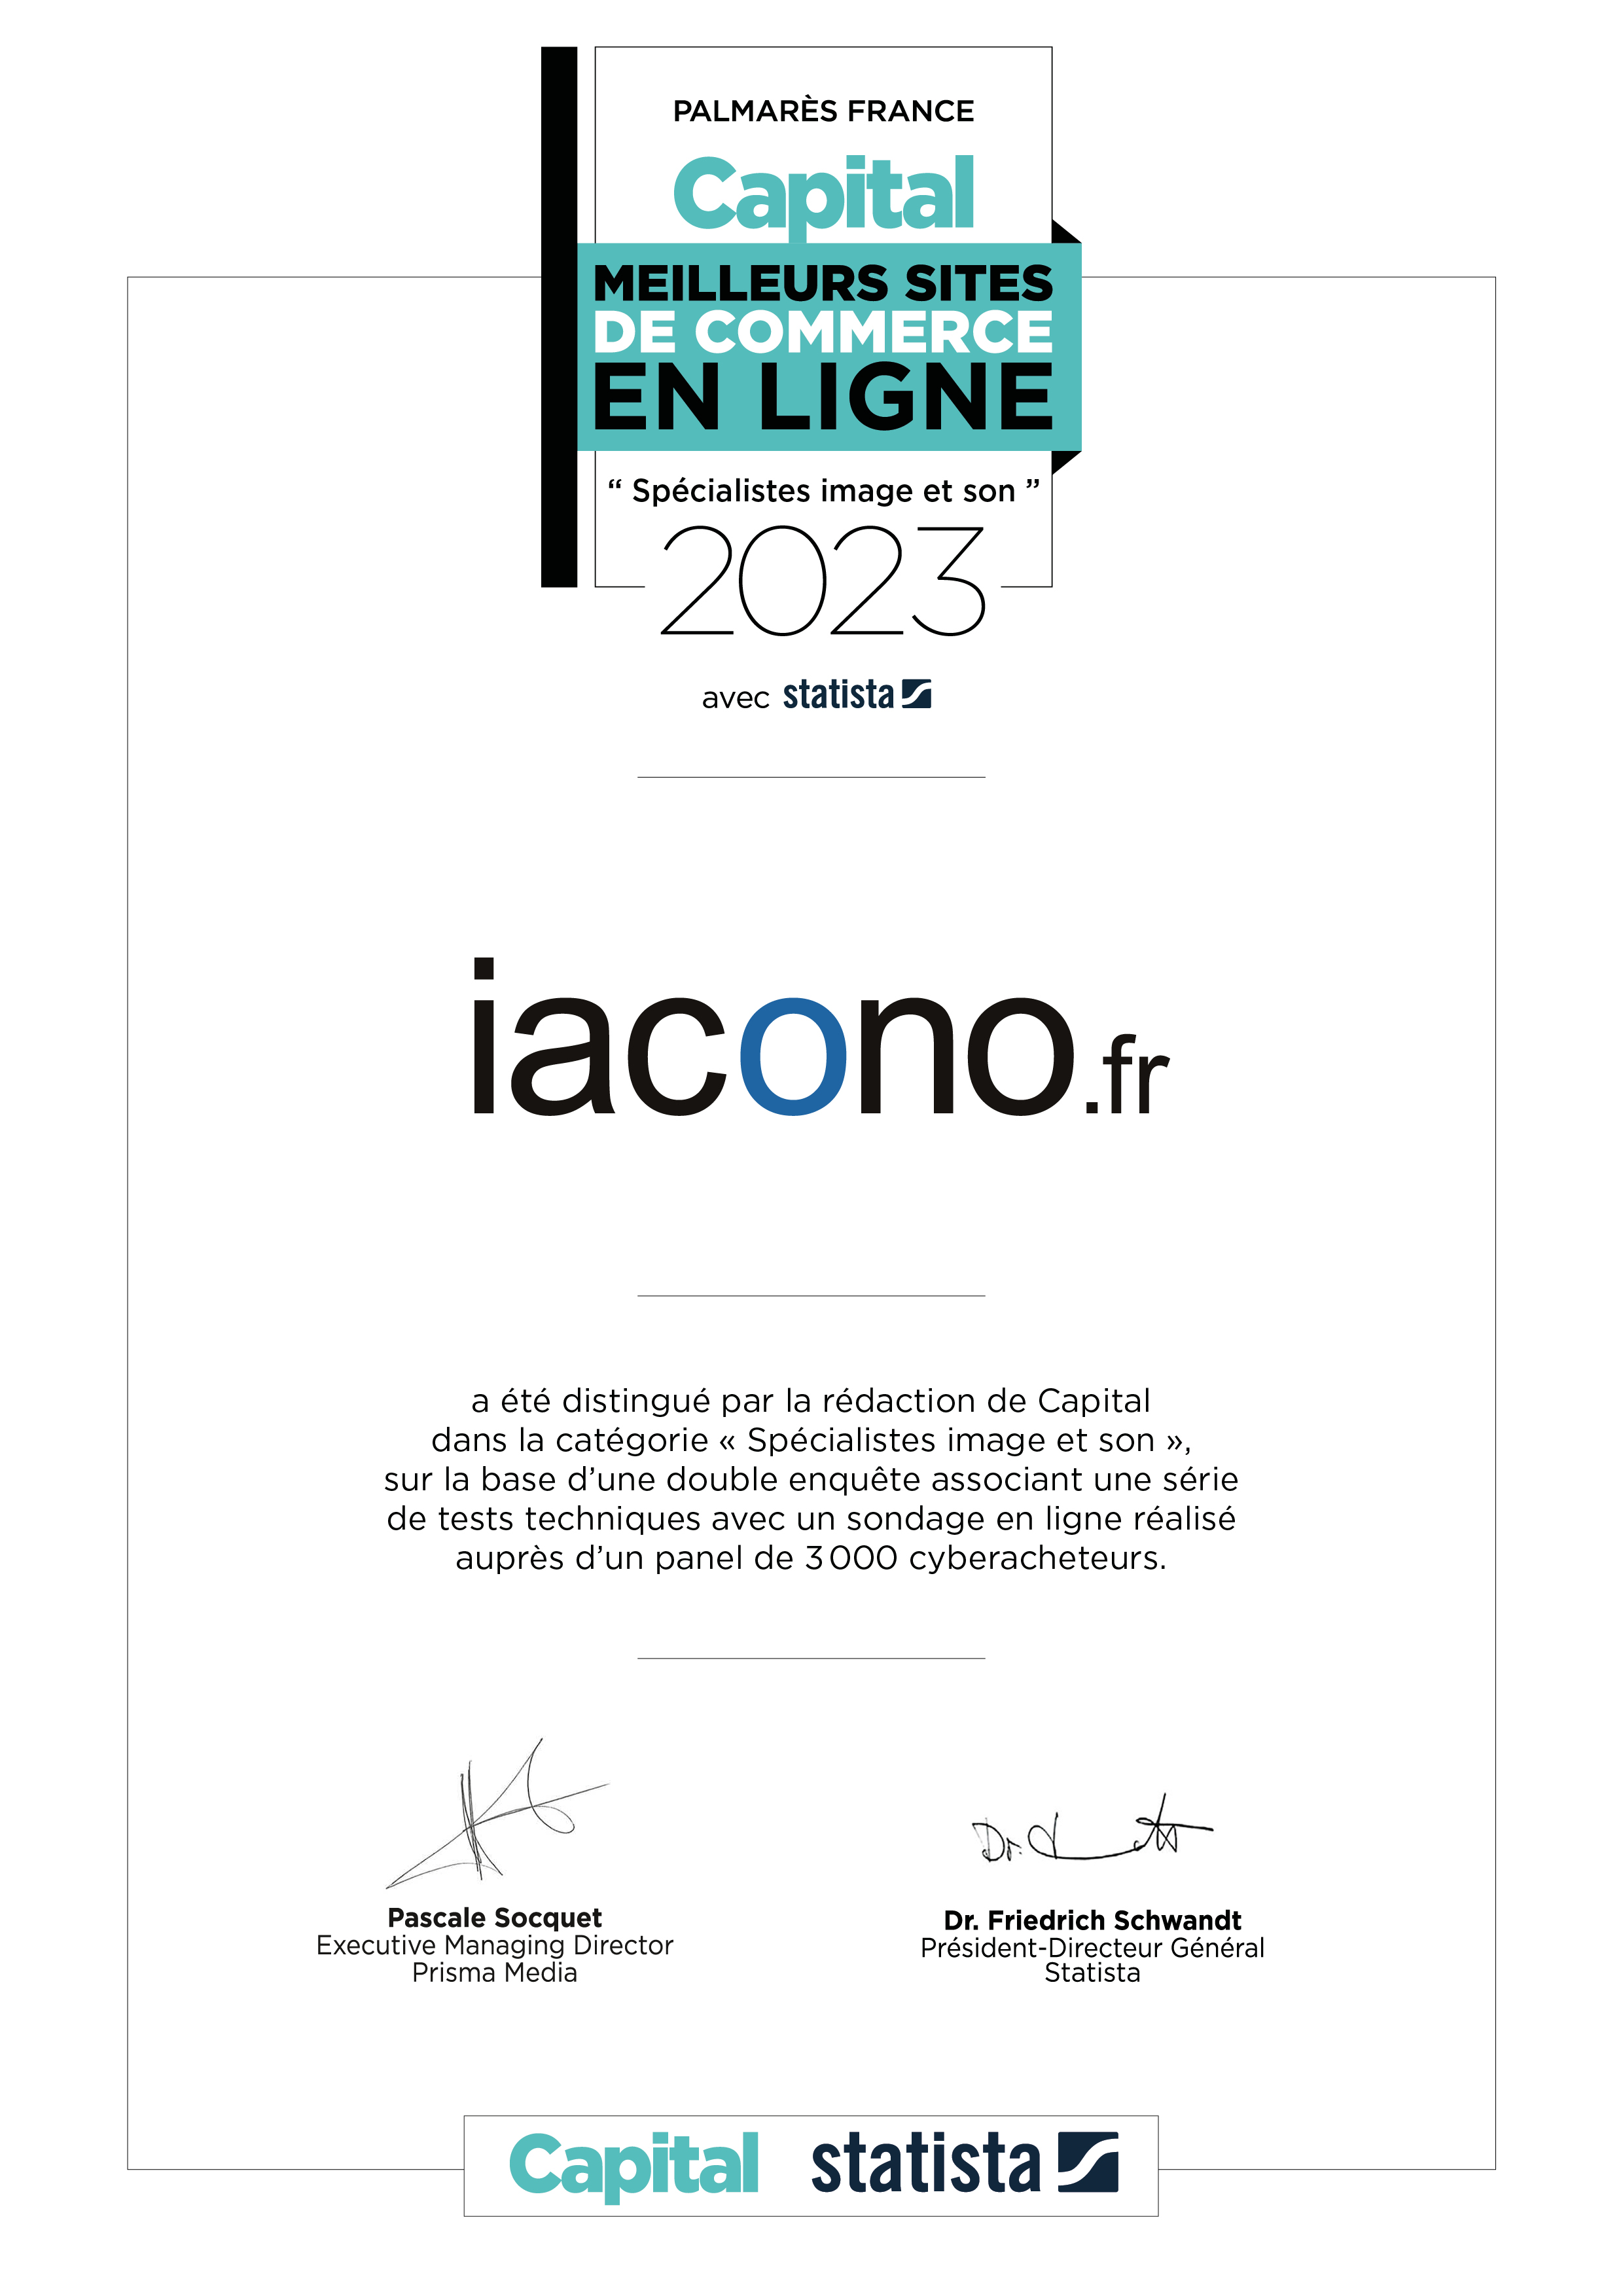 Certificat du palmarès Capital iacono.fr Meilleur site de commerce en ligne